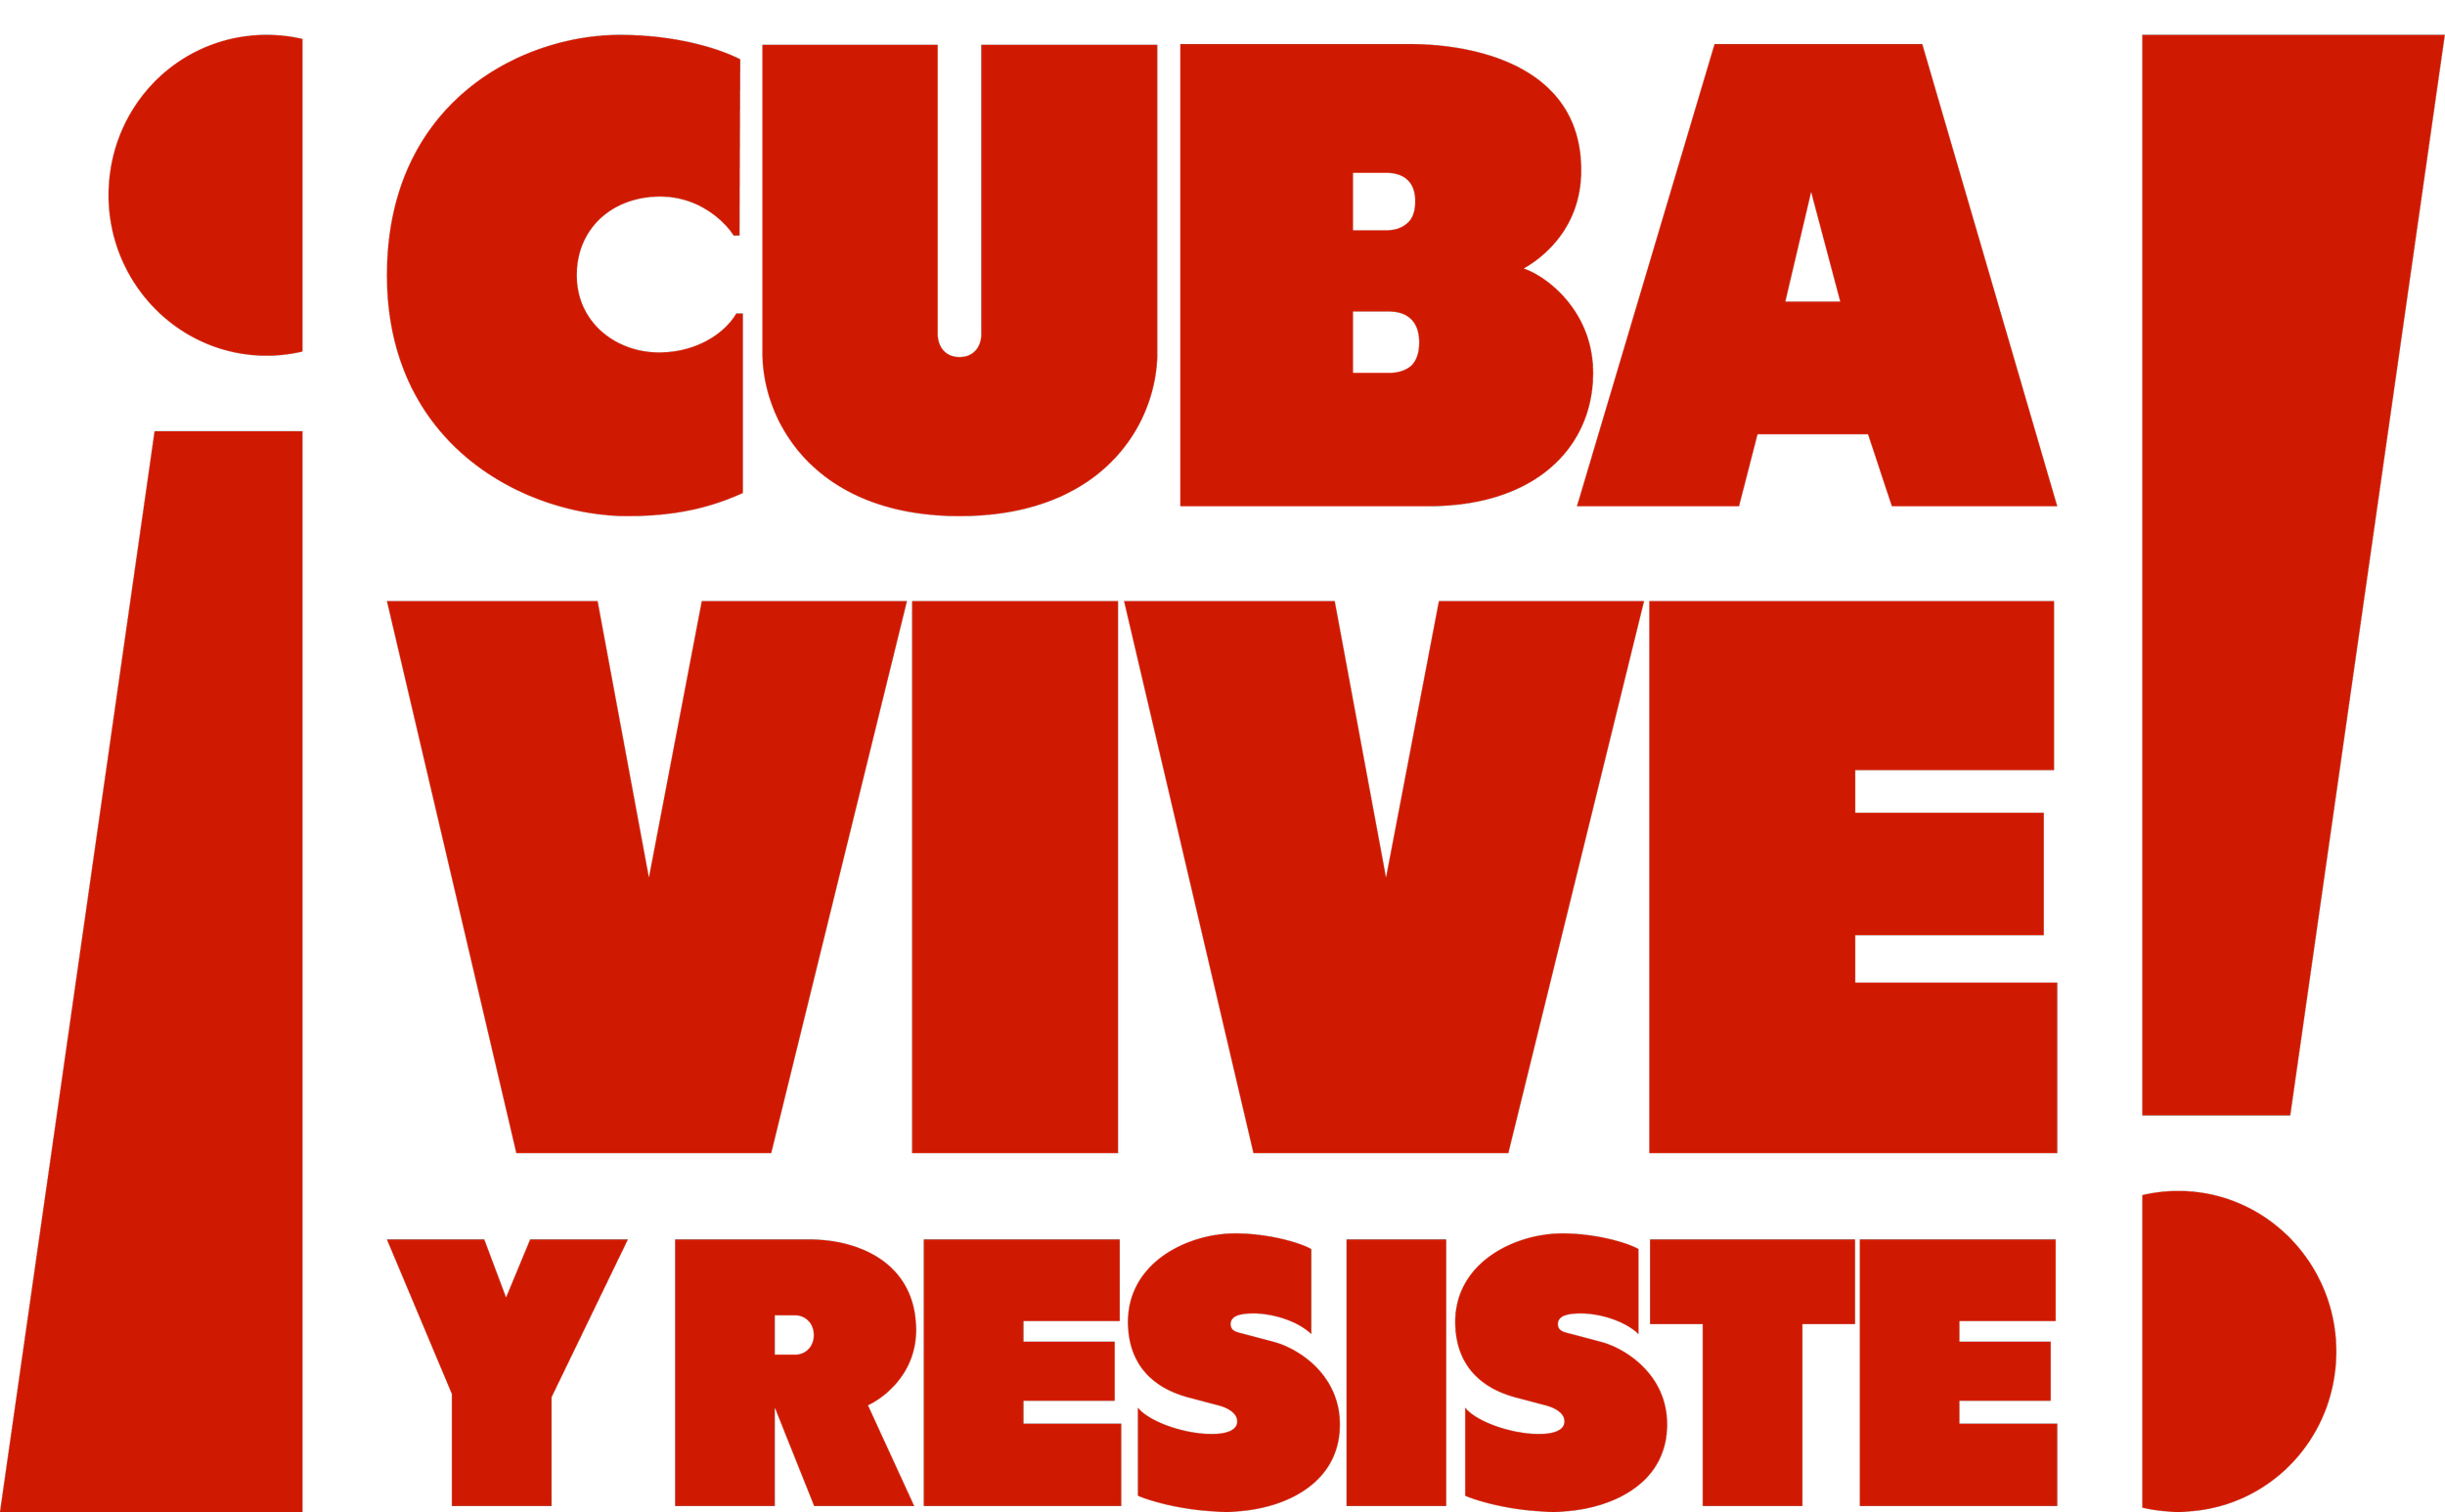 Cuba vive y Resiste